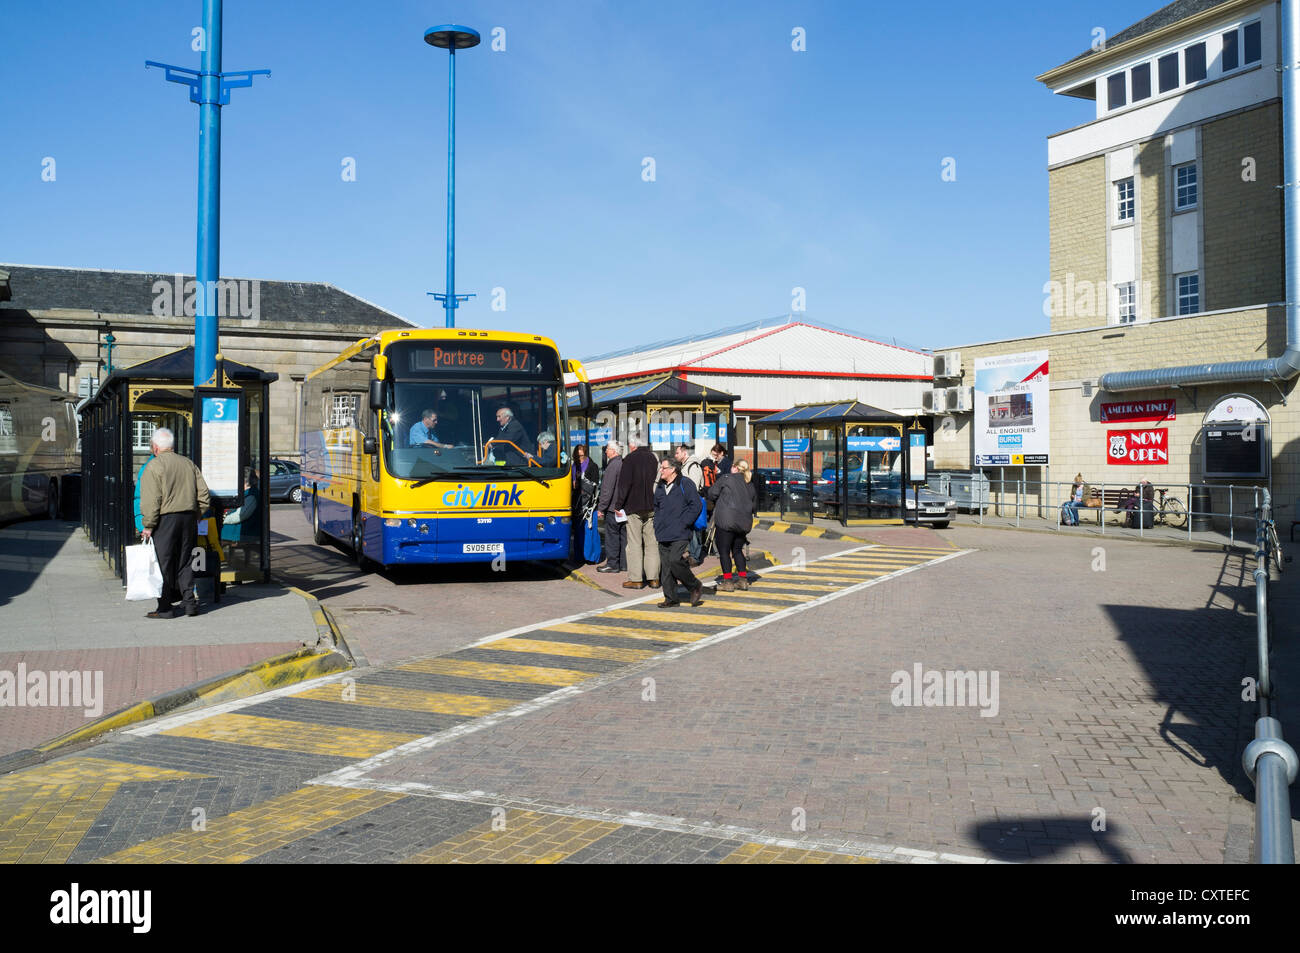 La gare routière de dh Inverness INVERNESS INVERNESSSHIRE Citylink chargement du bus de passagers au terminal des bus transport uk Banque D'Images